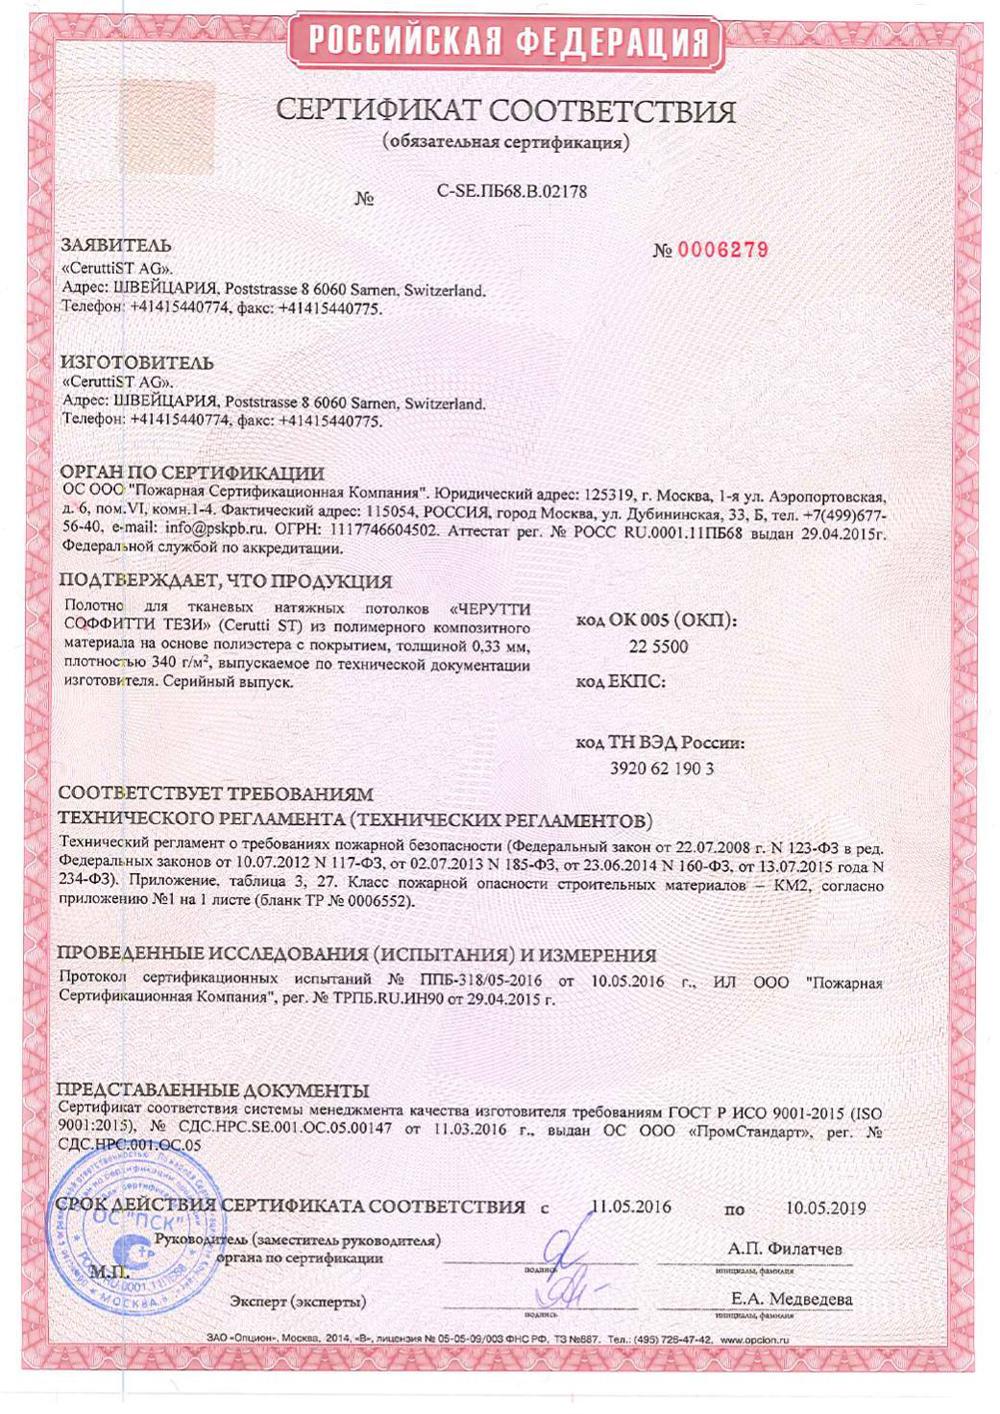 Сертификат соответствия ОС. ООО Пожарная Сертификационная Компания